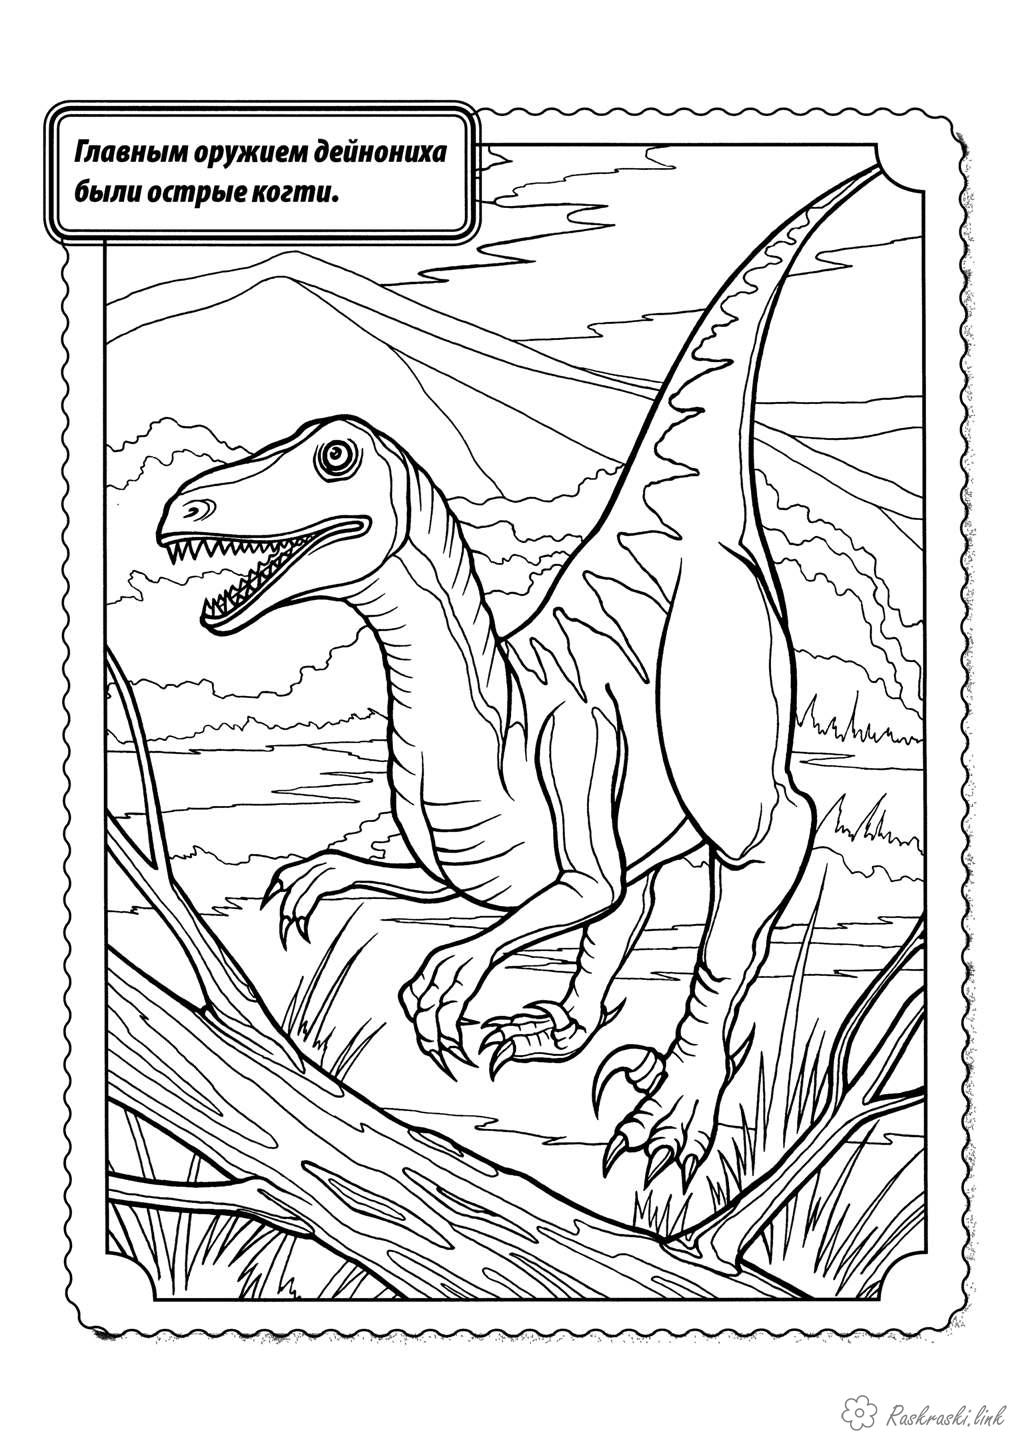 Раскраски Рептилии Рептилии, динозавр, дейноних, хищник, когти